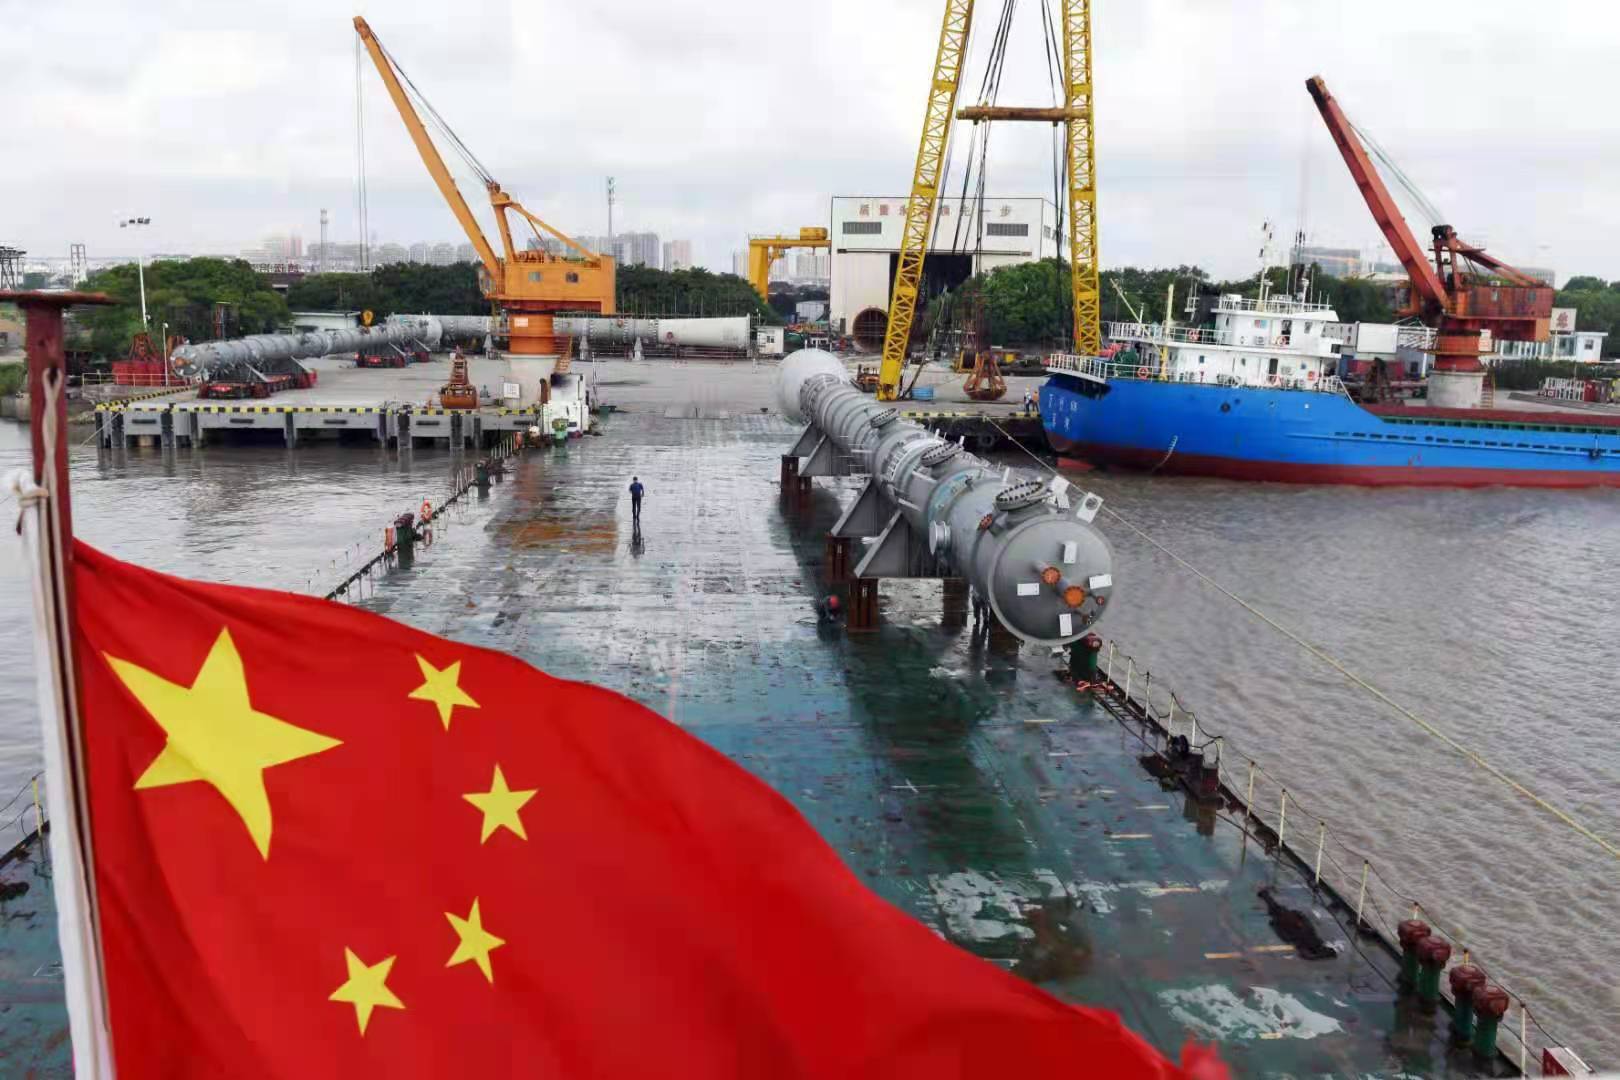 Две колонны пиролиза, изготовленные и обработанные компанией Sinopec Ningbo Engineering Co., Ltd , были погружены на корабль в районе Чжэньхай провинции Чжэцзян и отправлены в Россию.